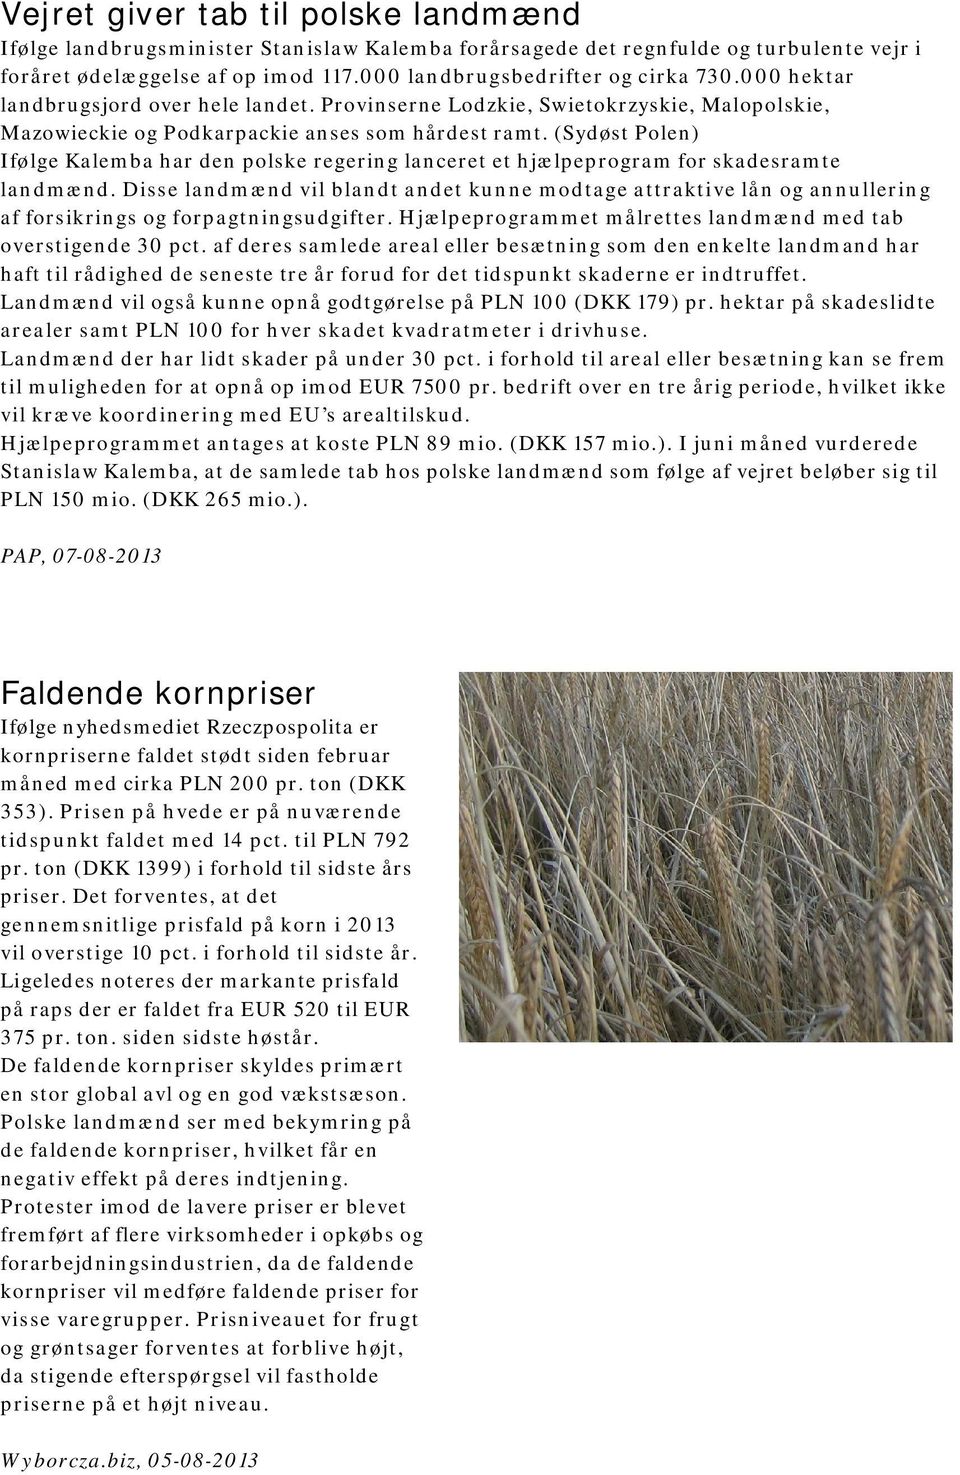 (Sydøst Polen) Ifølge Kalemba har den polske regering lanceret et hjælpeprogram for skadesramte landmænd.